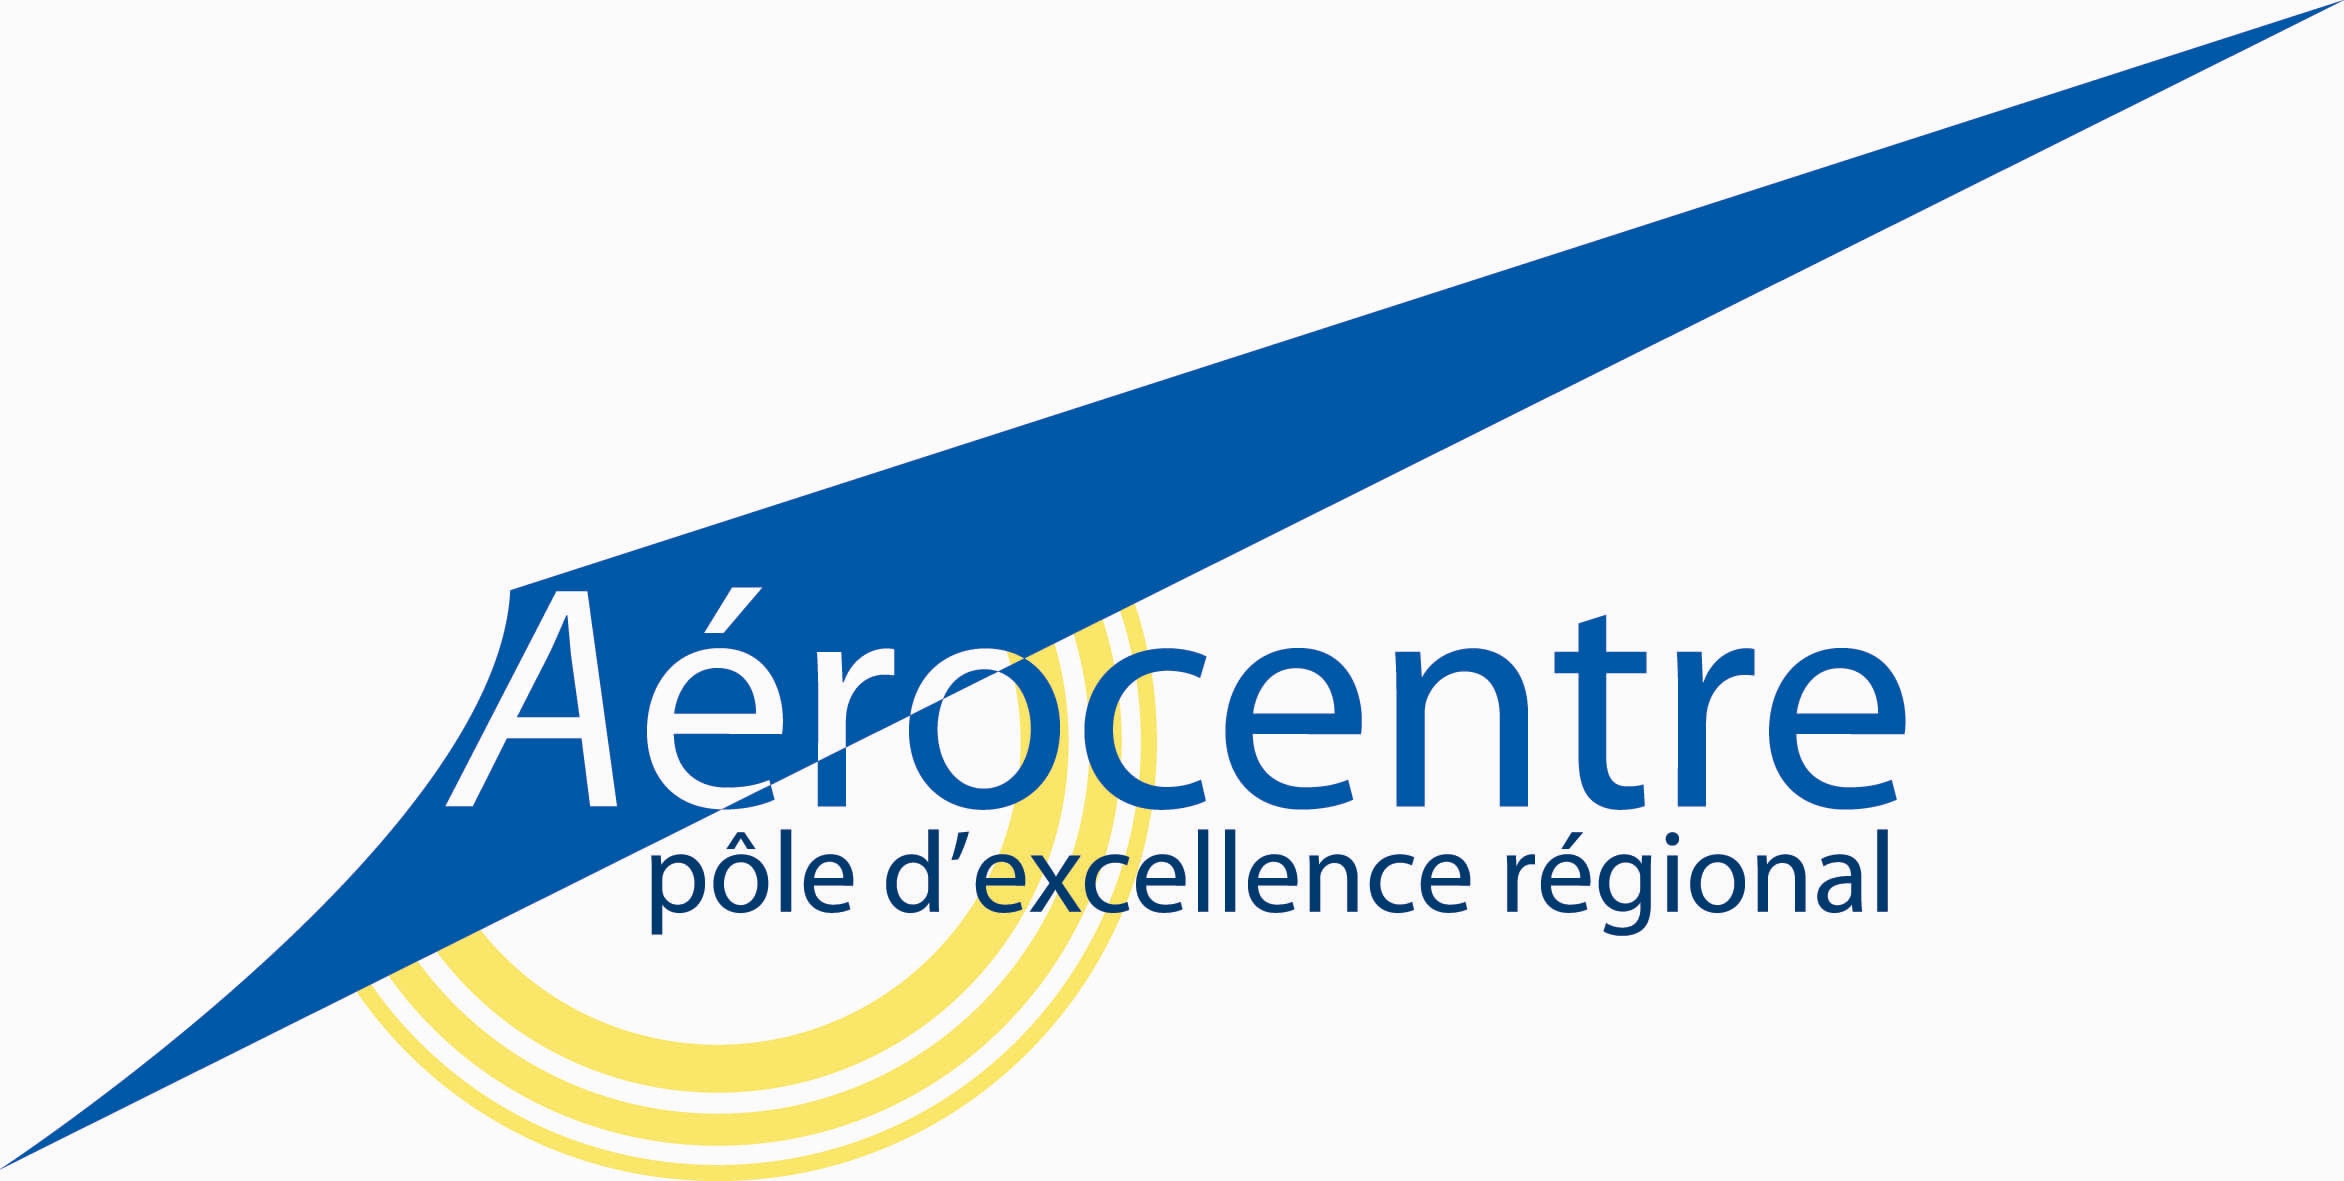 logo Aerocentre vectorise